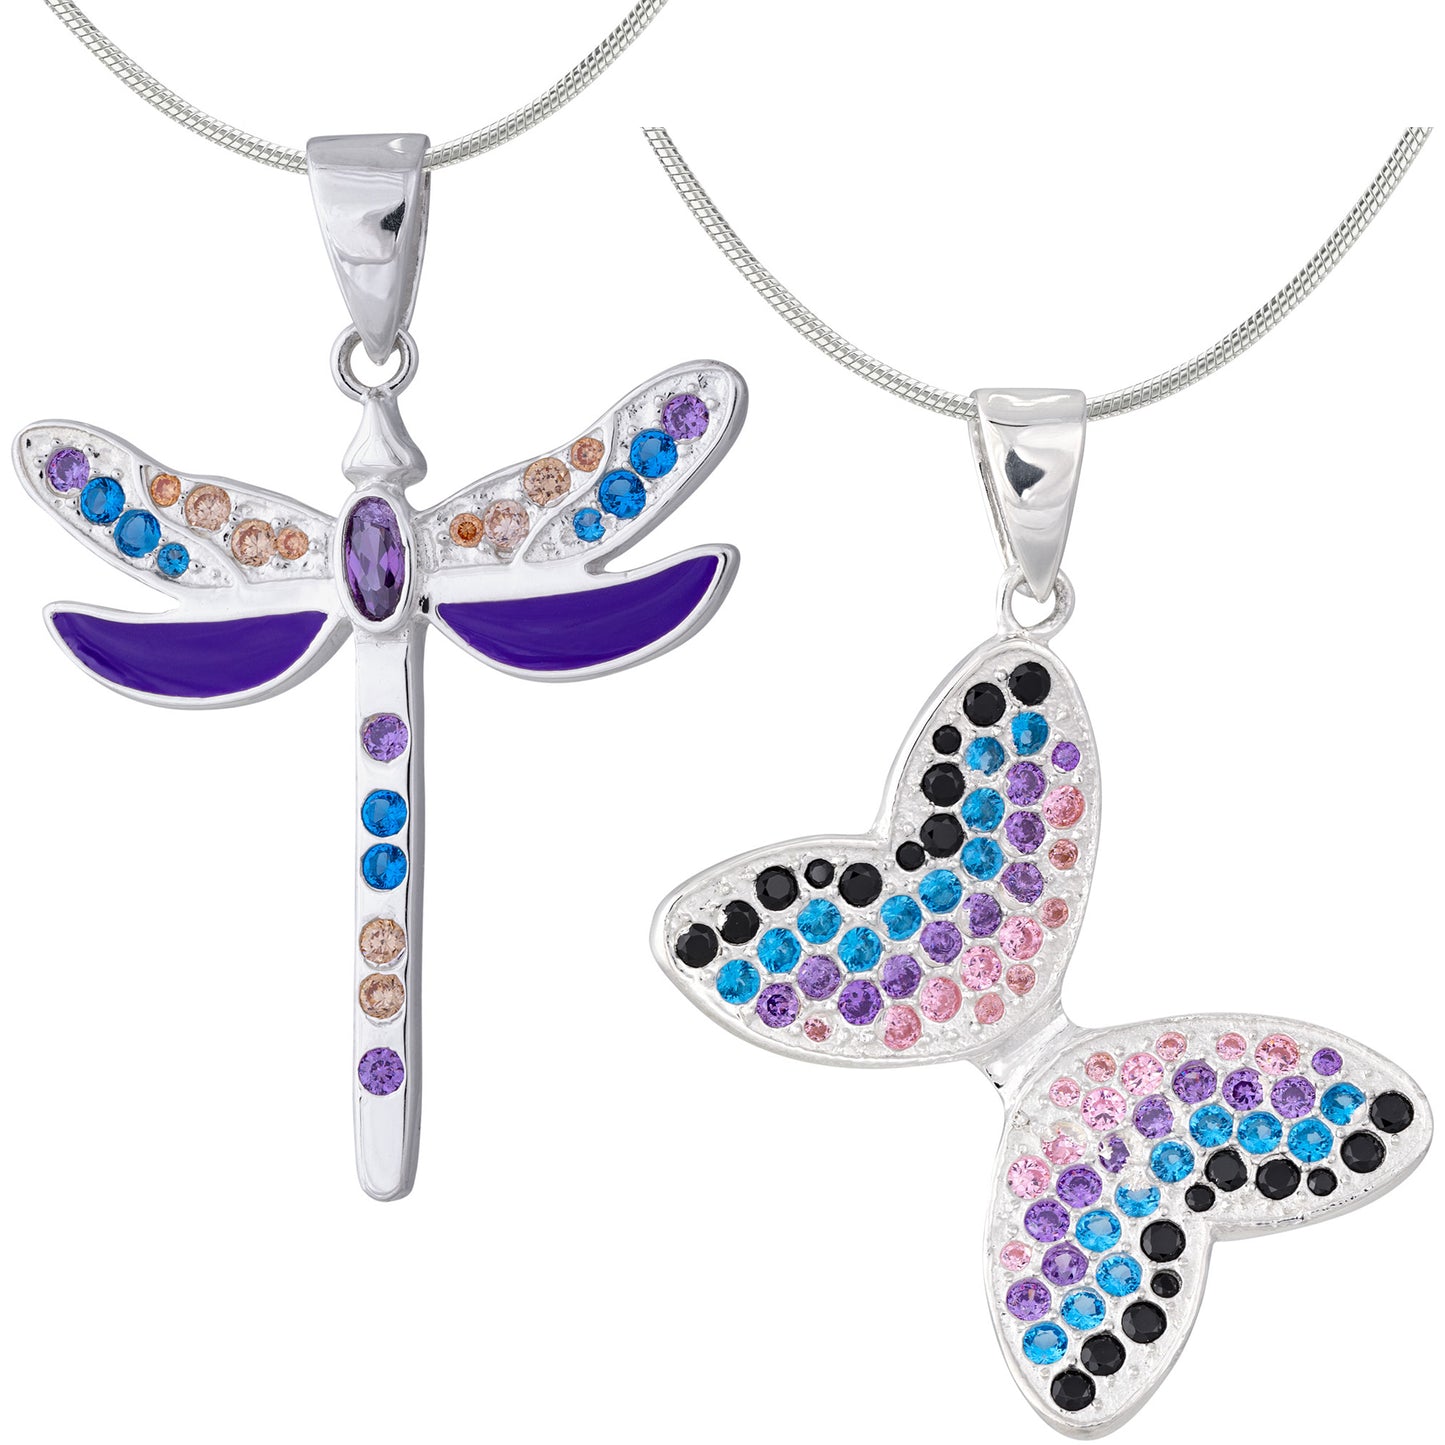 Fluttering Friends Sterling & Crystal Necklace